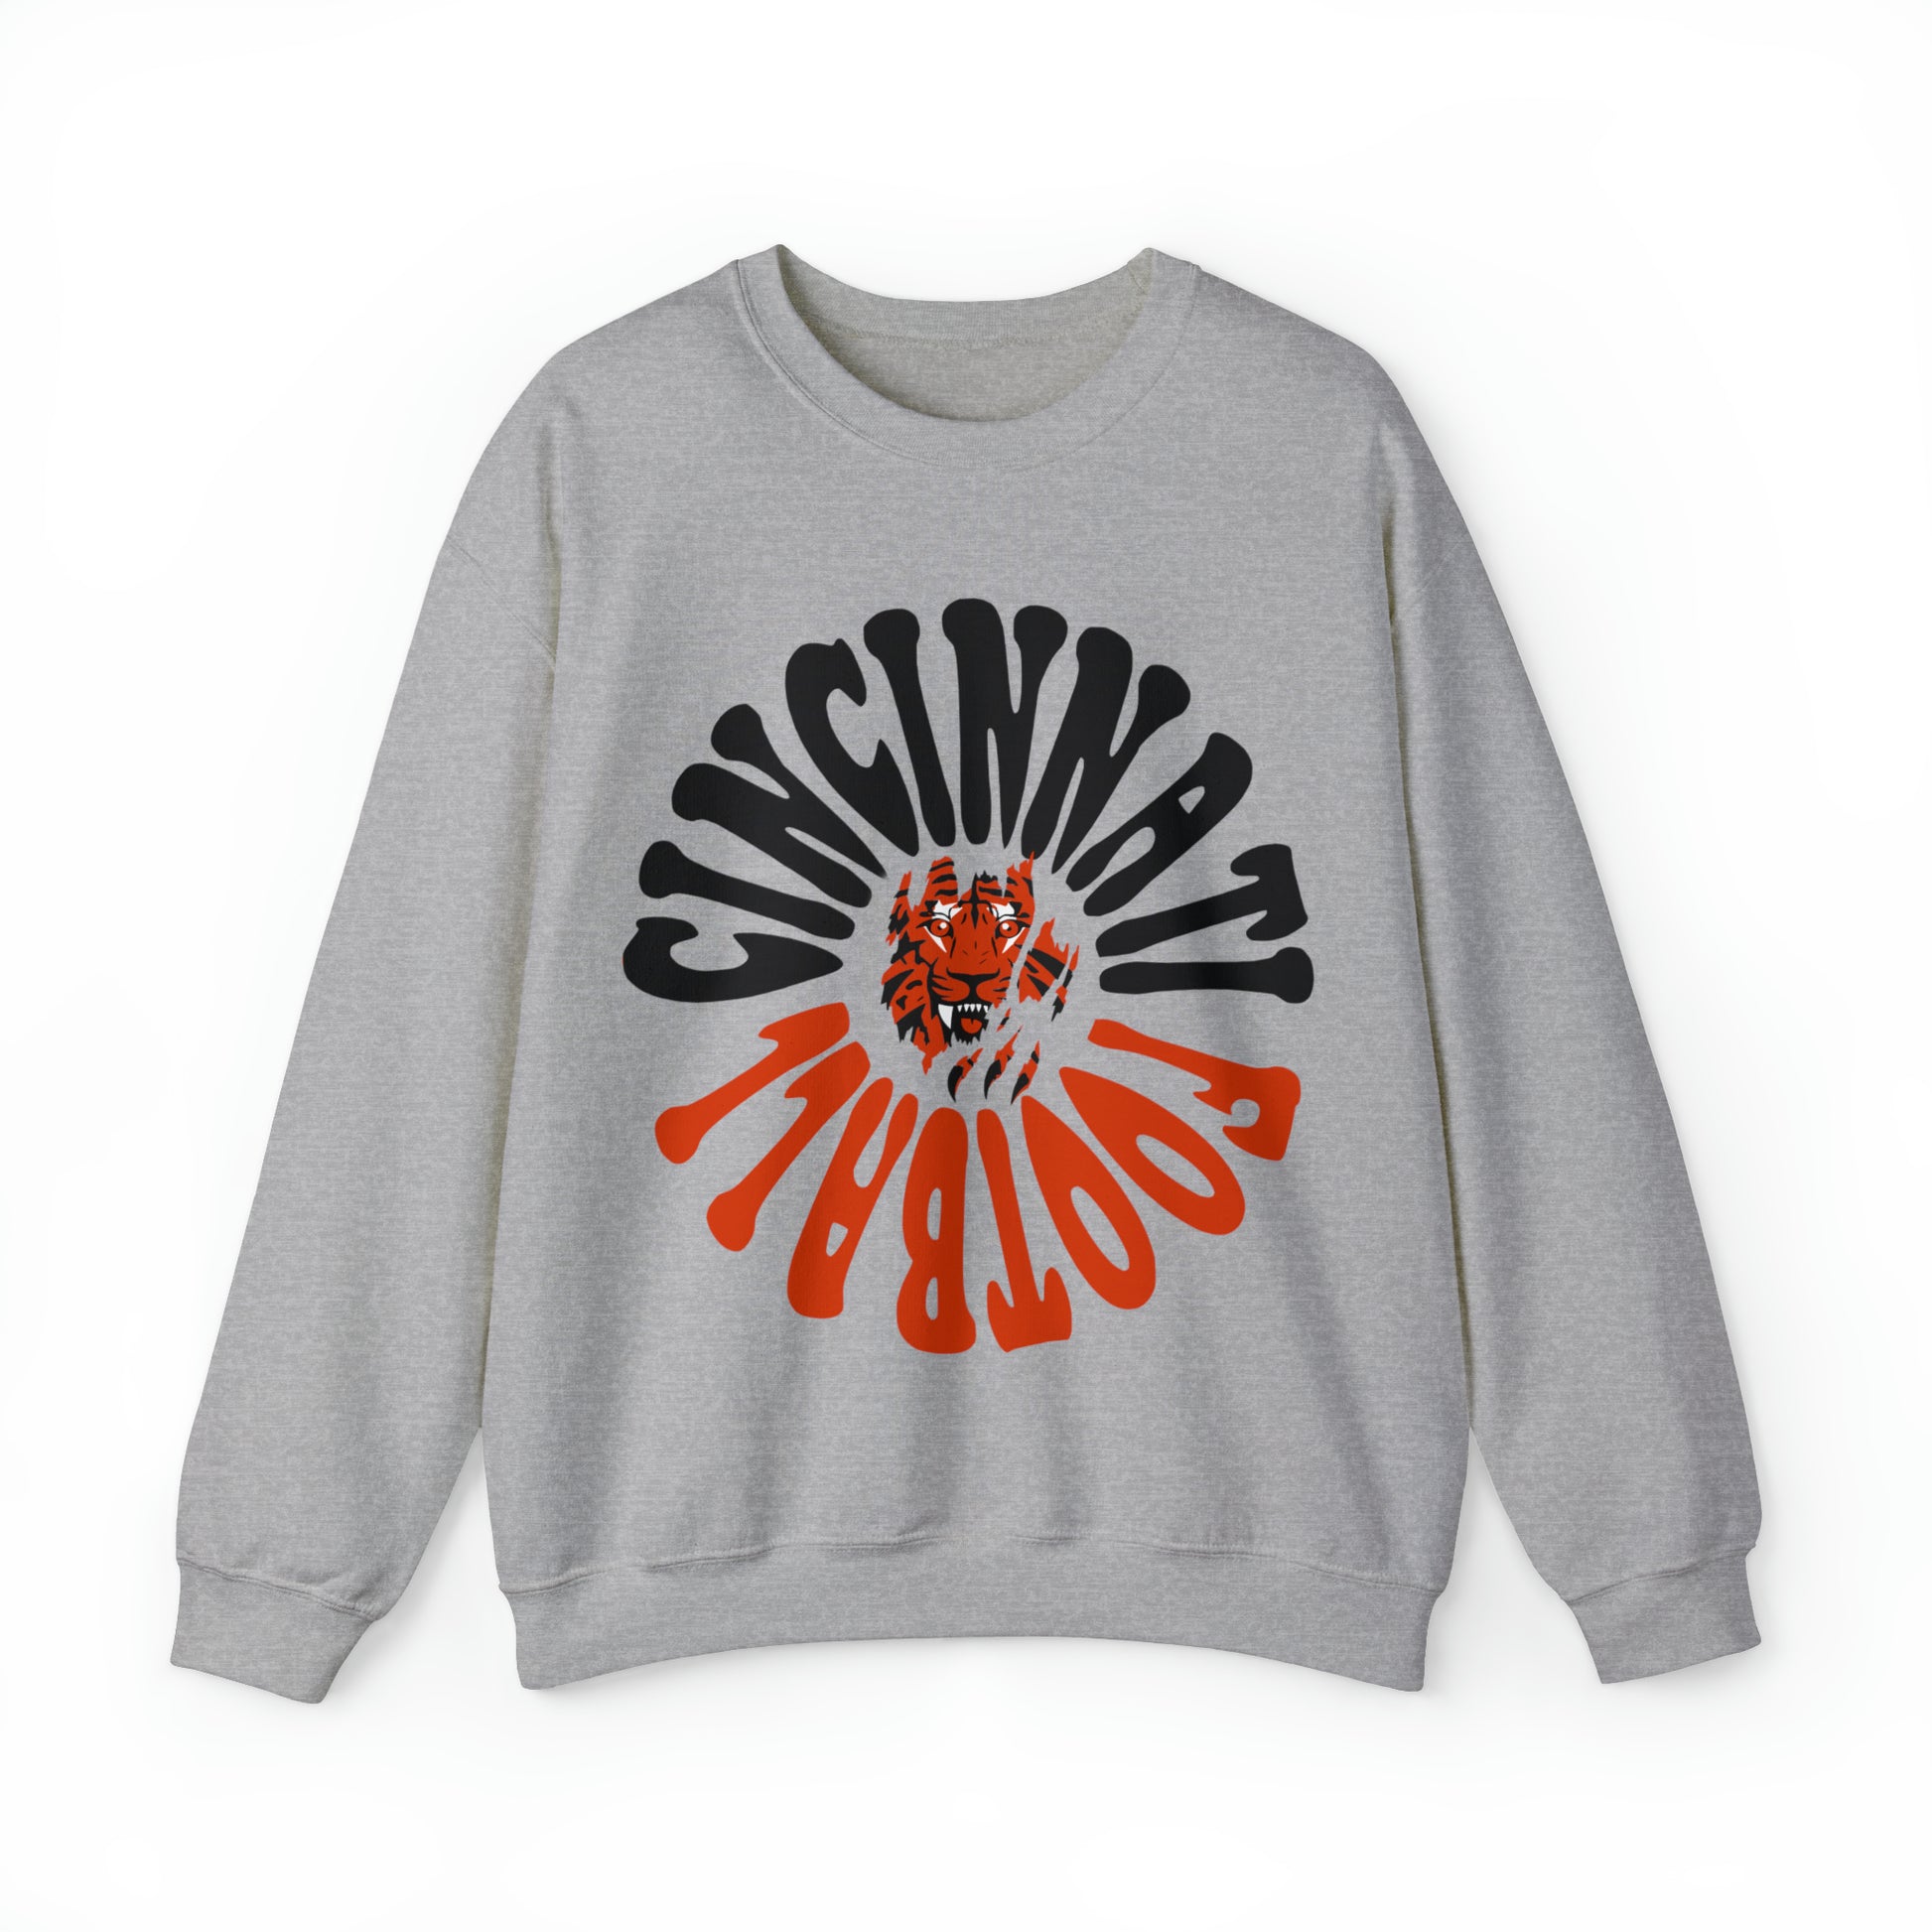 Hippy Cincinnati Bengals Crewneck Sweatshirt - Vintage Men's & Women's Bengals Joe Burrow Oversized Football - Design 2 Gray